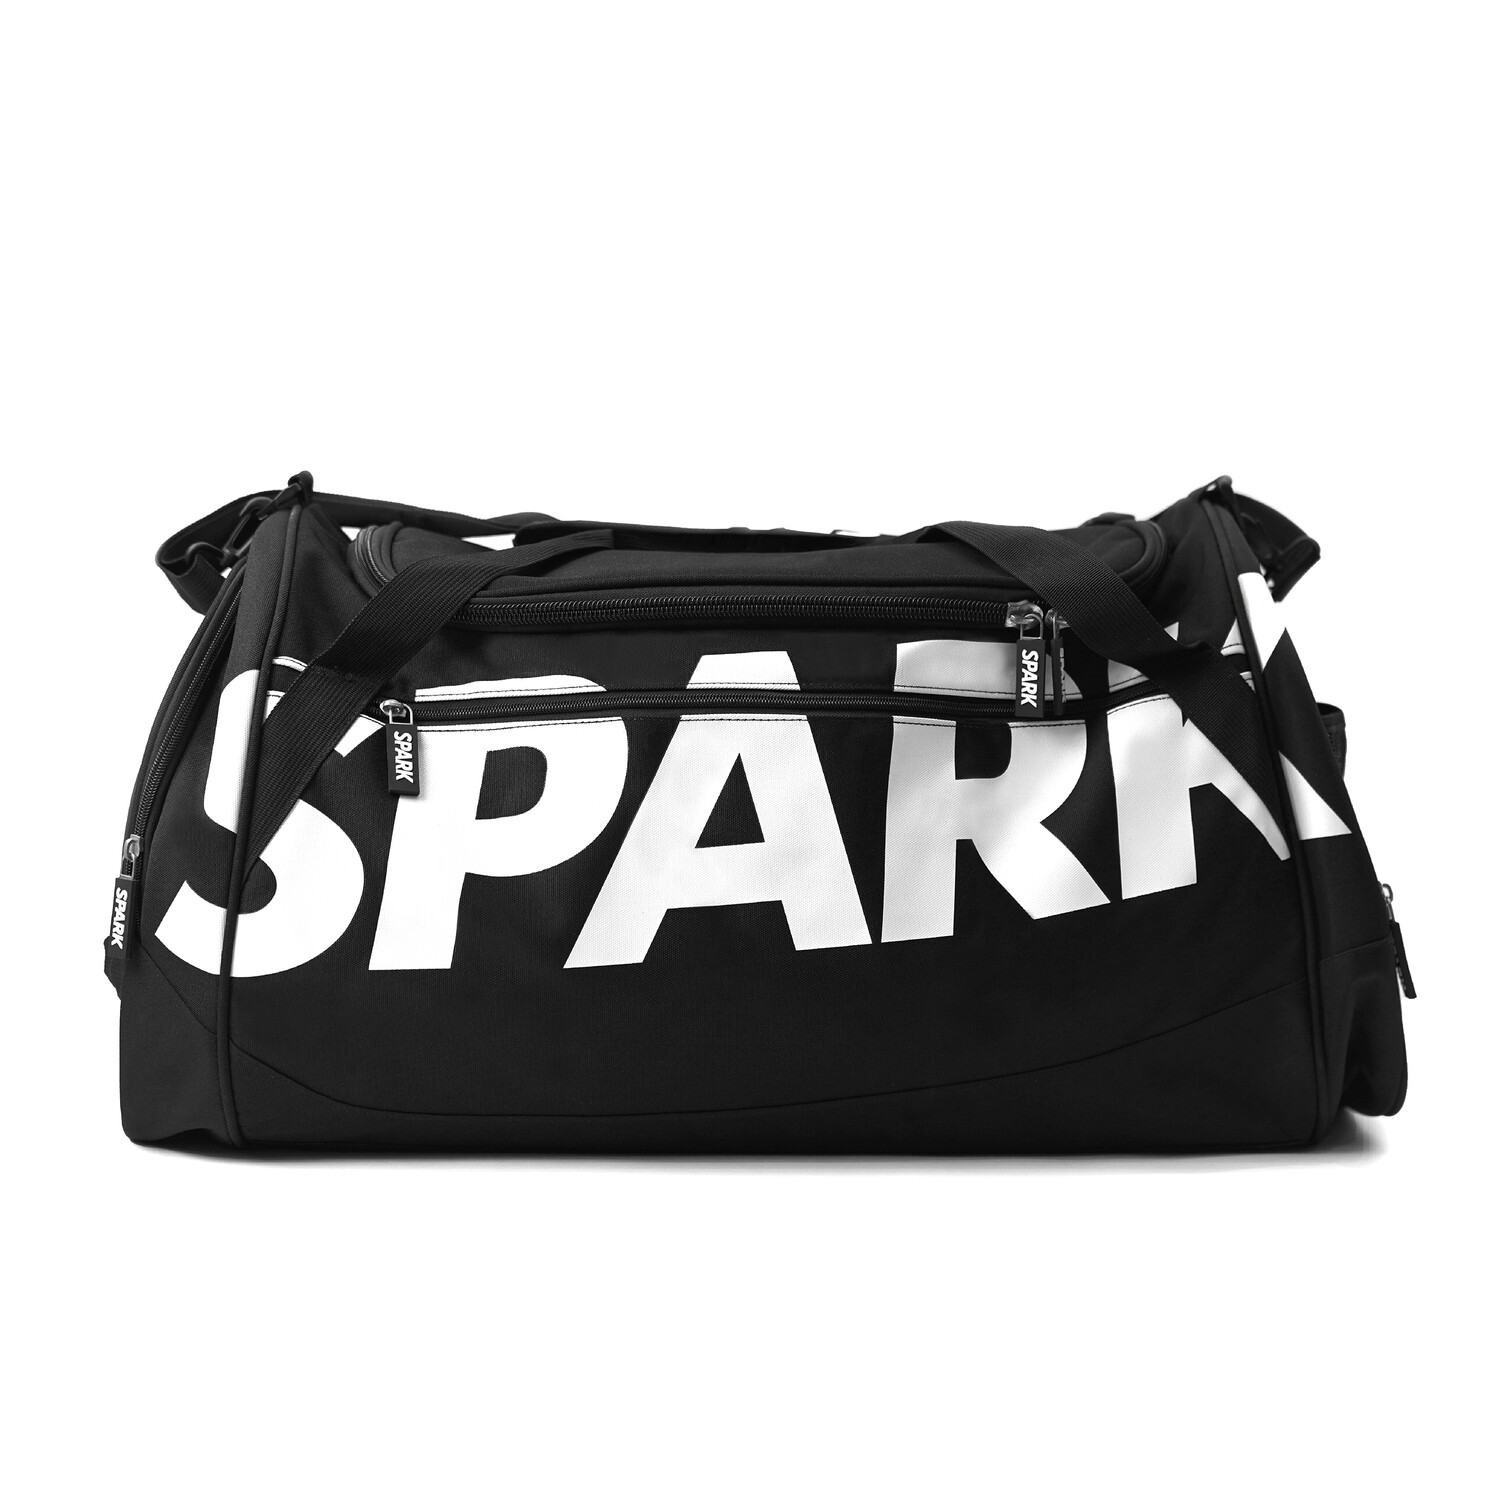 SPARK Gym Duffel Bag